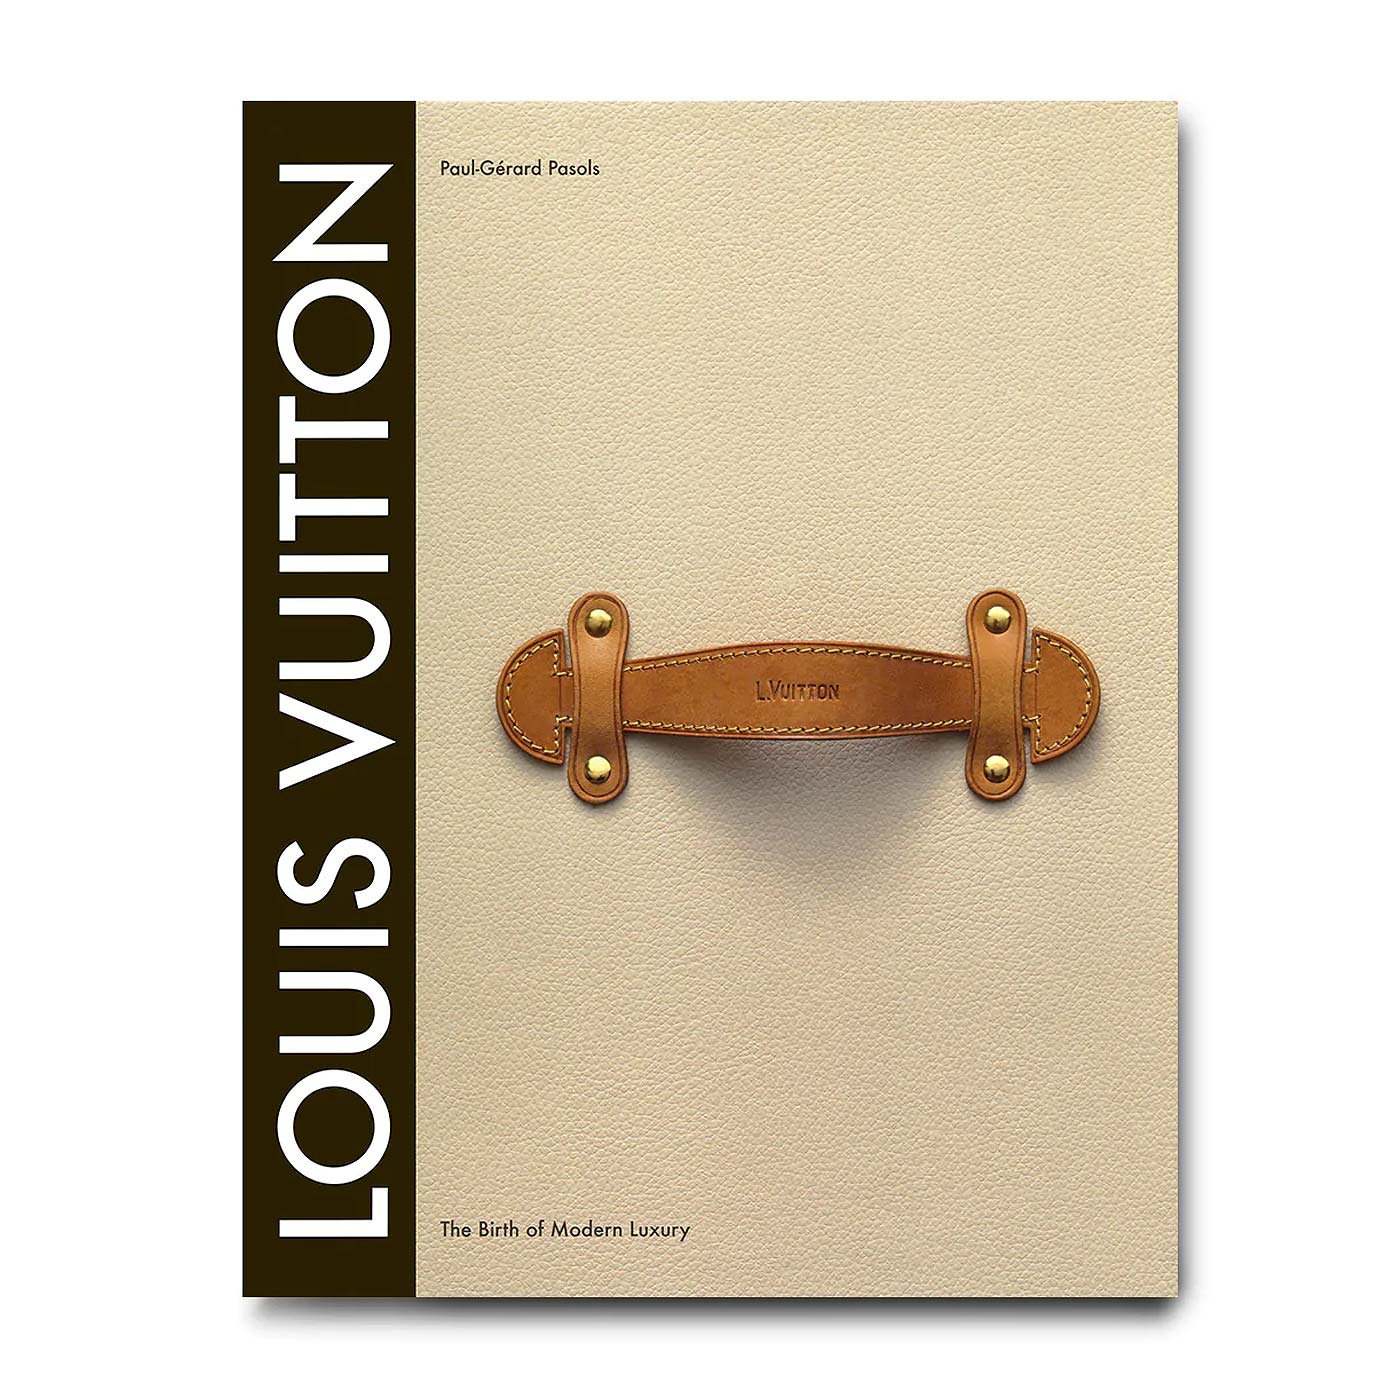 Louis Vuitton Archives - Gold House